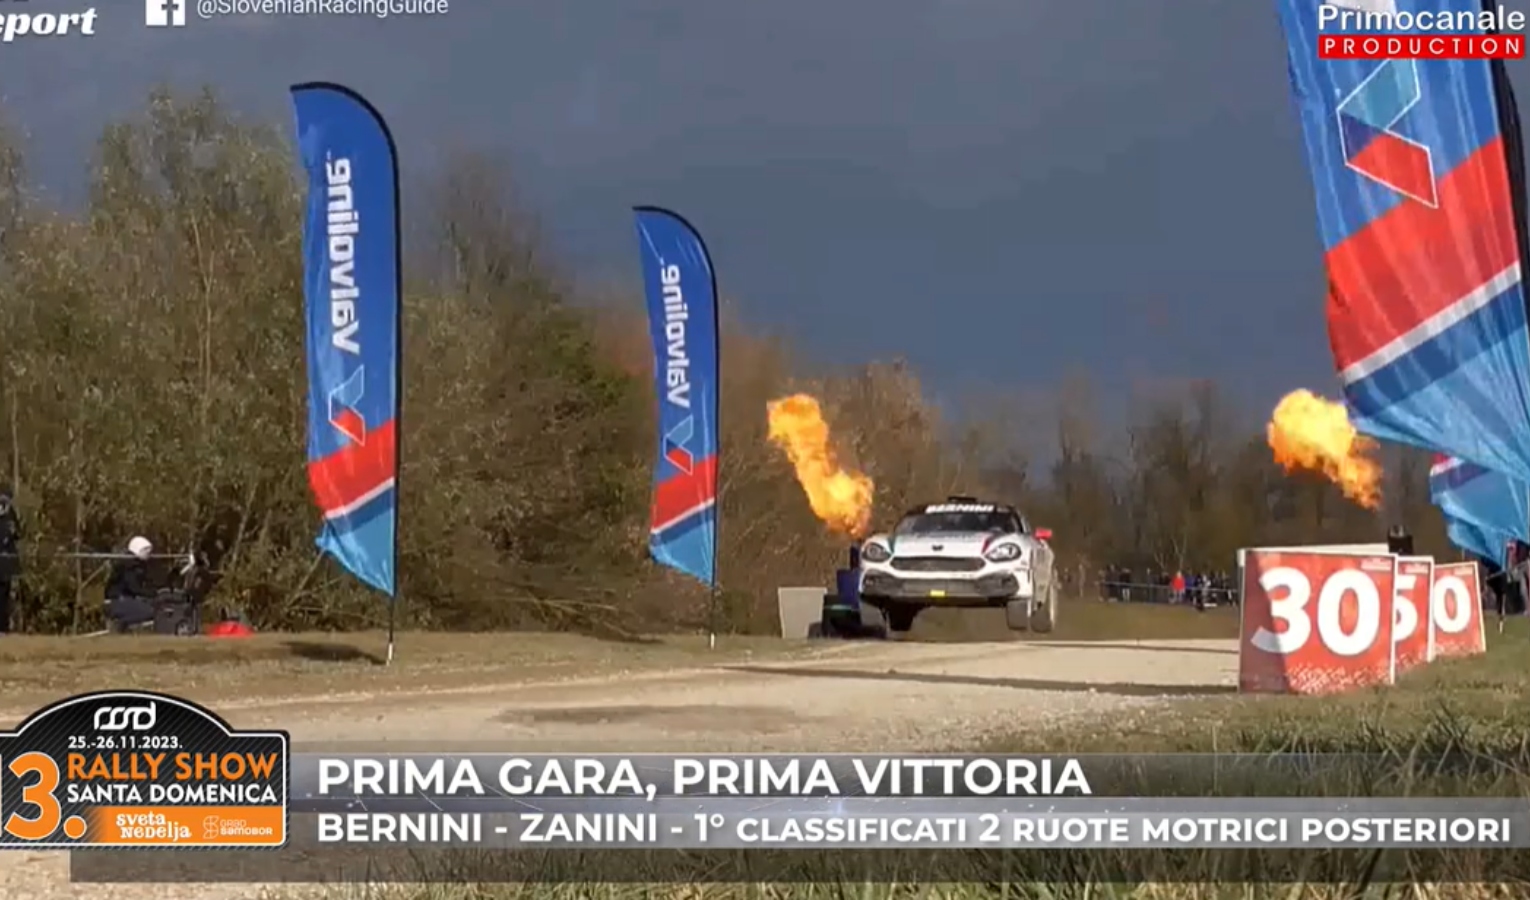 Fenomeno Matteo Bernini, a 14 anni vince il rally in Croazia